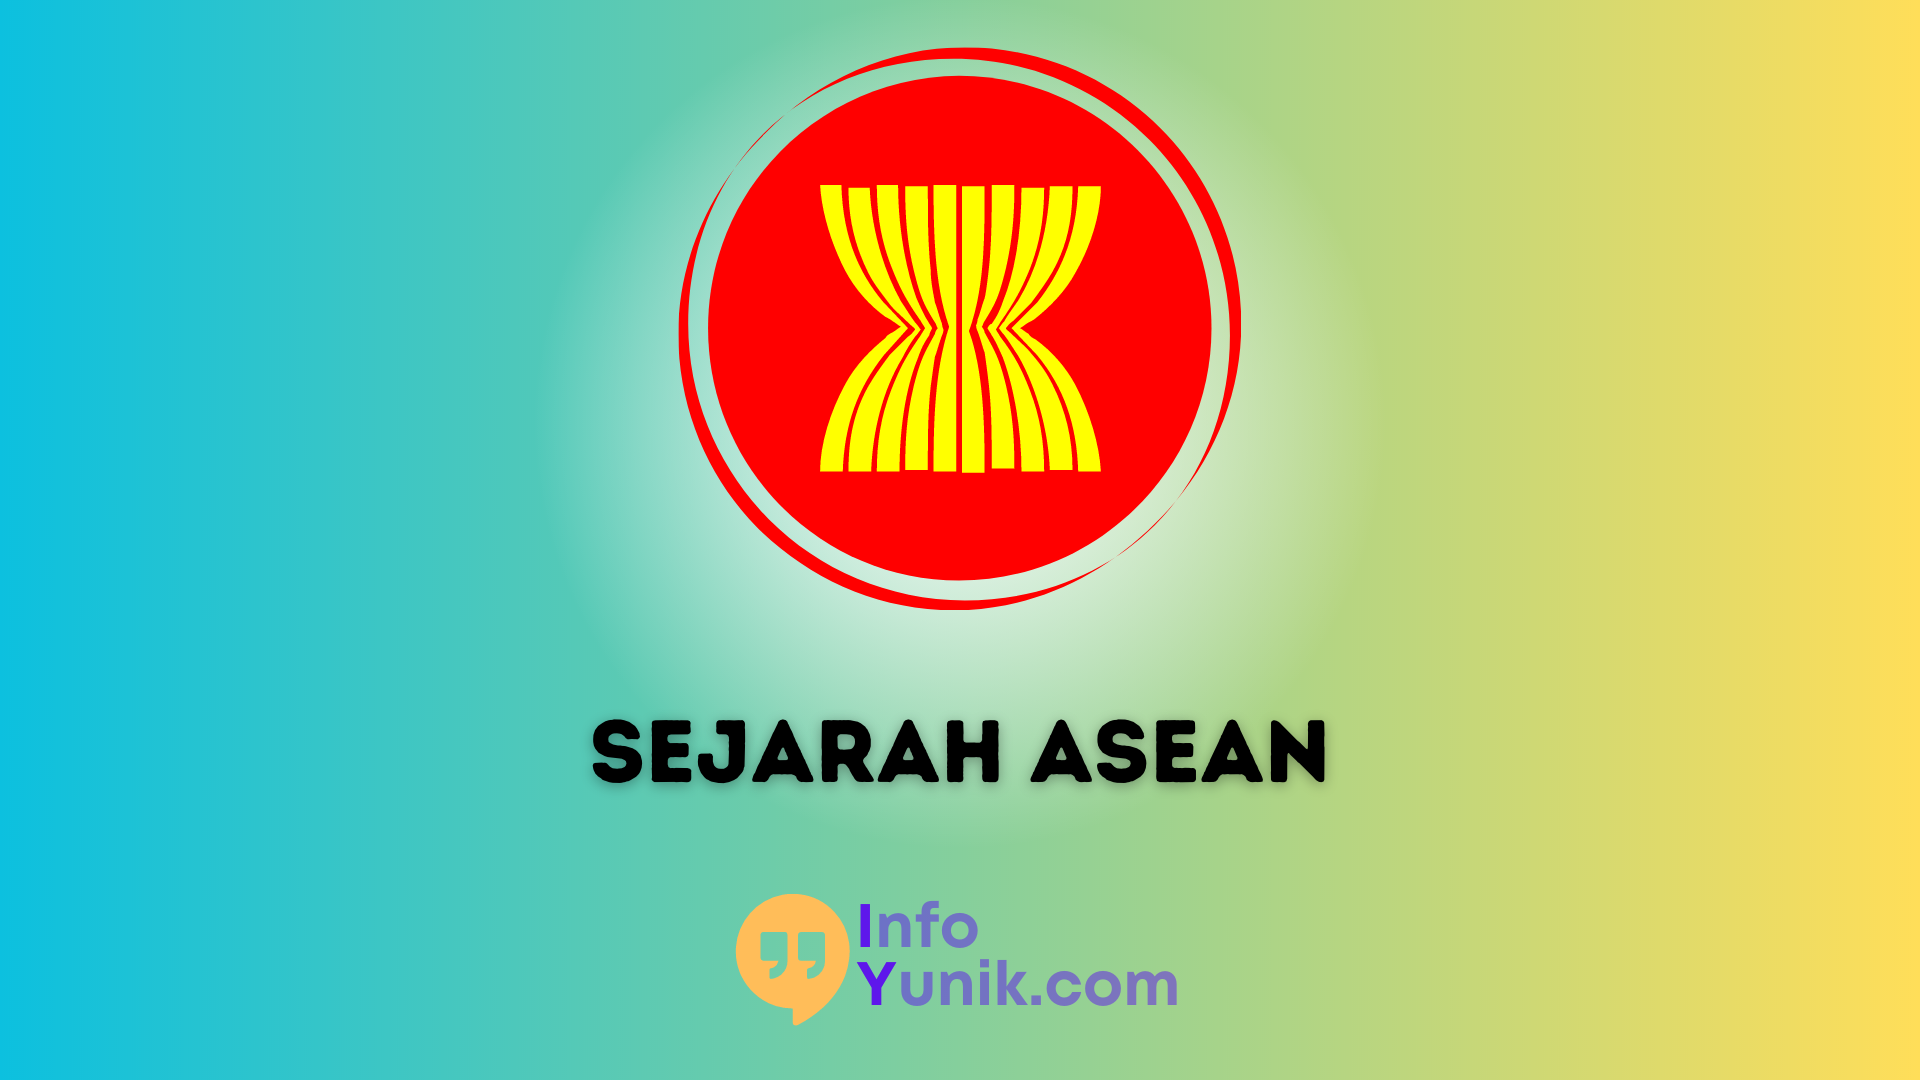 Pentingnya Mengetahui Tentang Sejarah ASEAN untuk Memahami Peran dan Kontribusinya